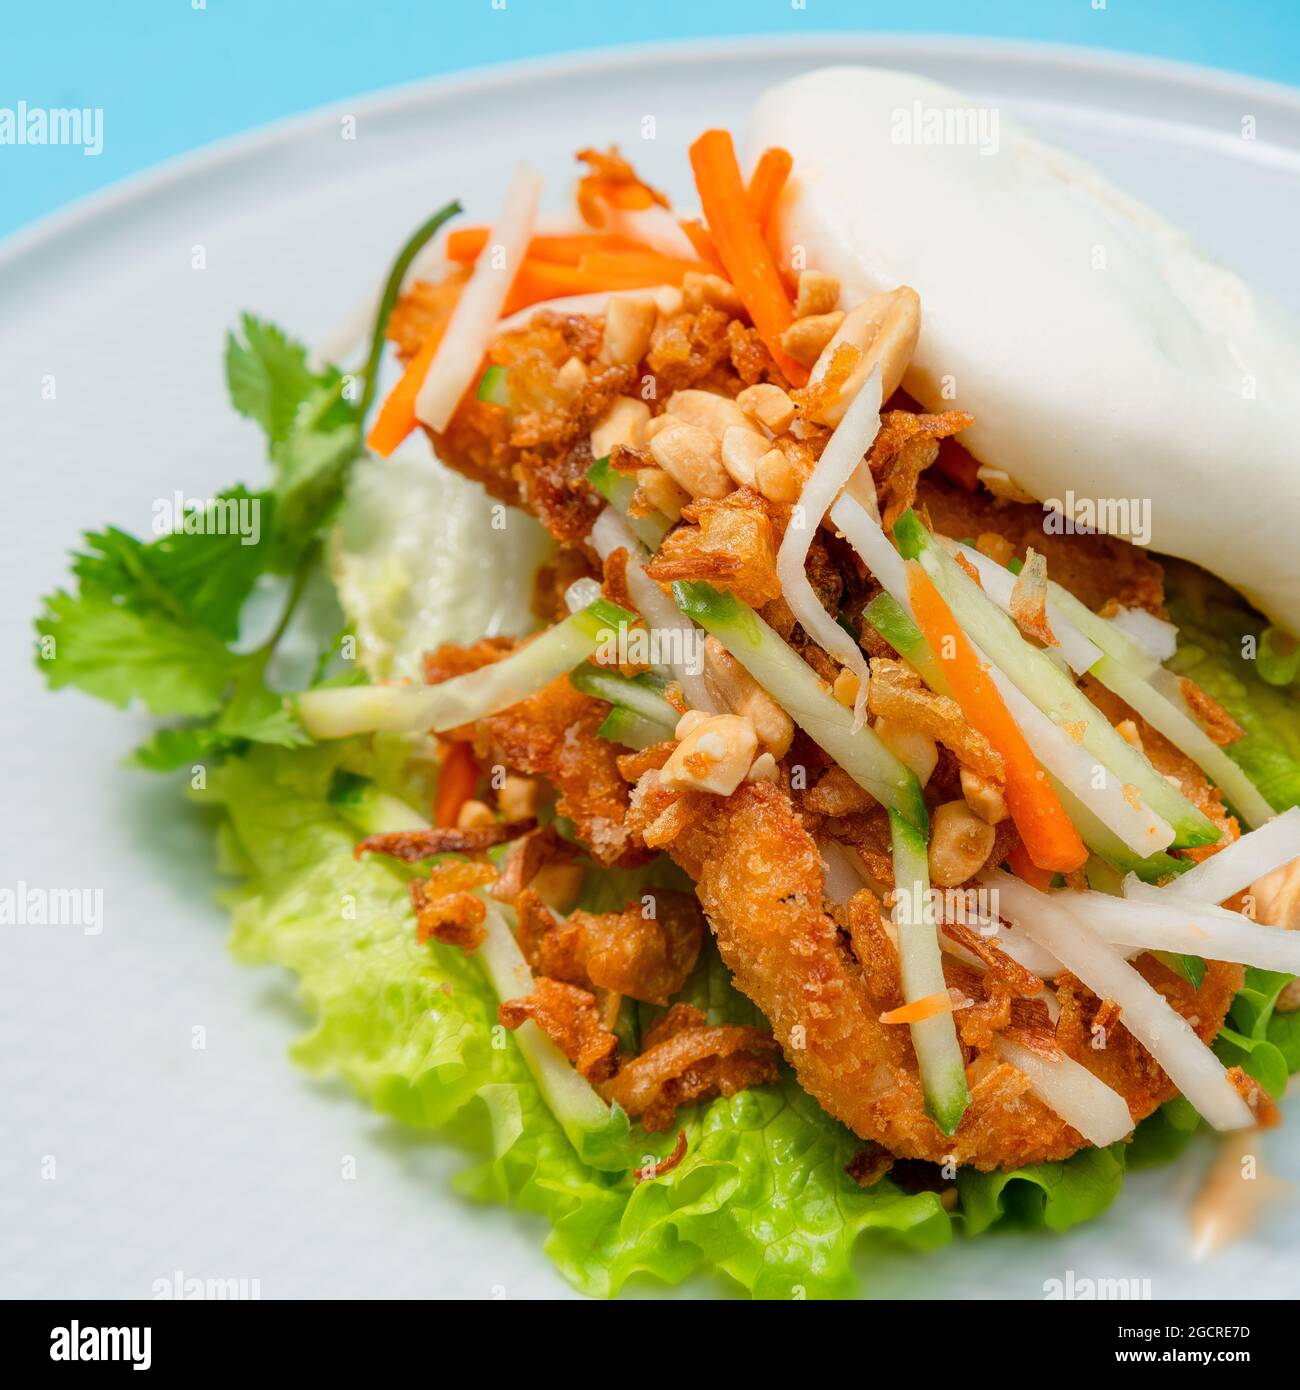 Köstliches gedämpftes bao-Brötchen auf einem Teller mit gebratenem Huhn und frischem Gemüse - Salat, Karotten und gerösteten Erdnüssen. Beliebtes Street Food Stockfoto